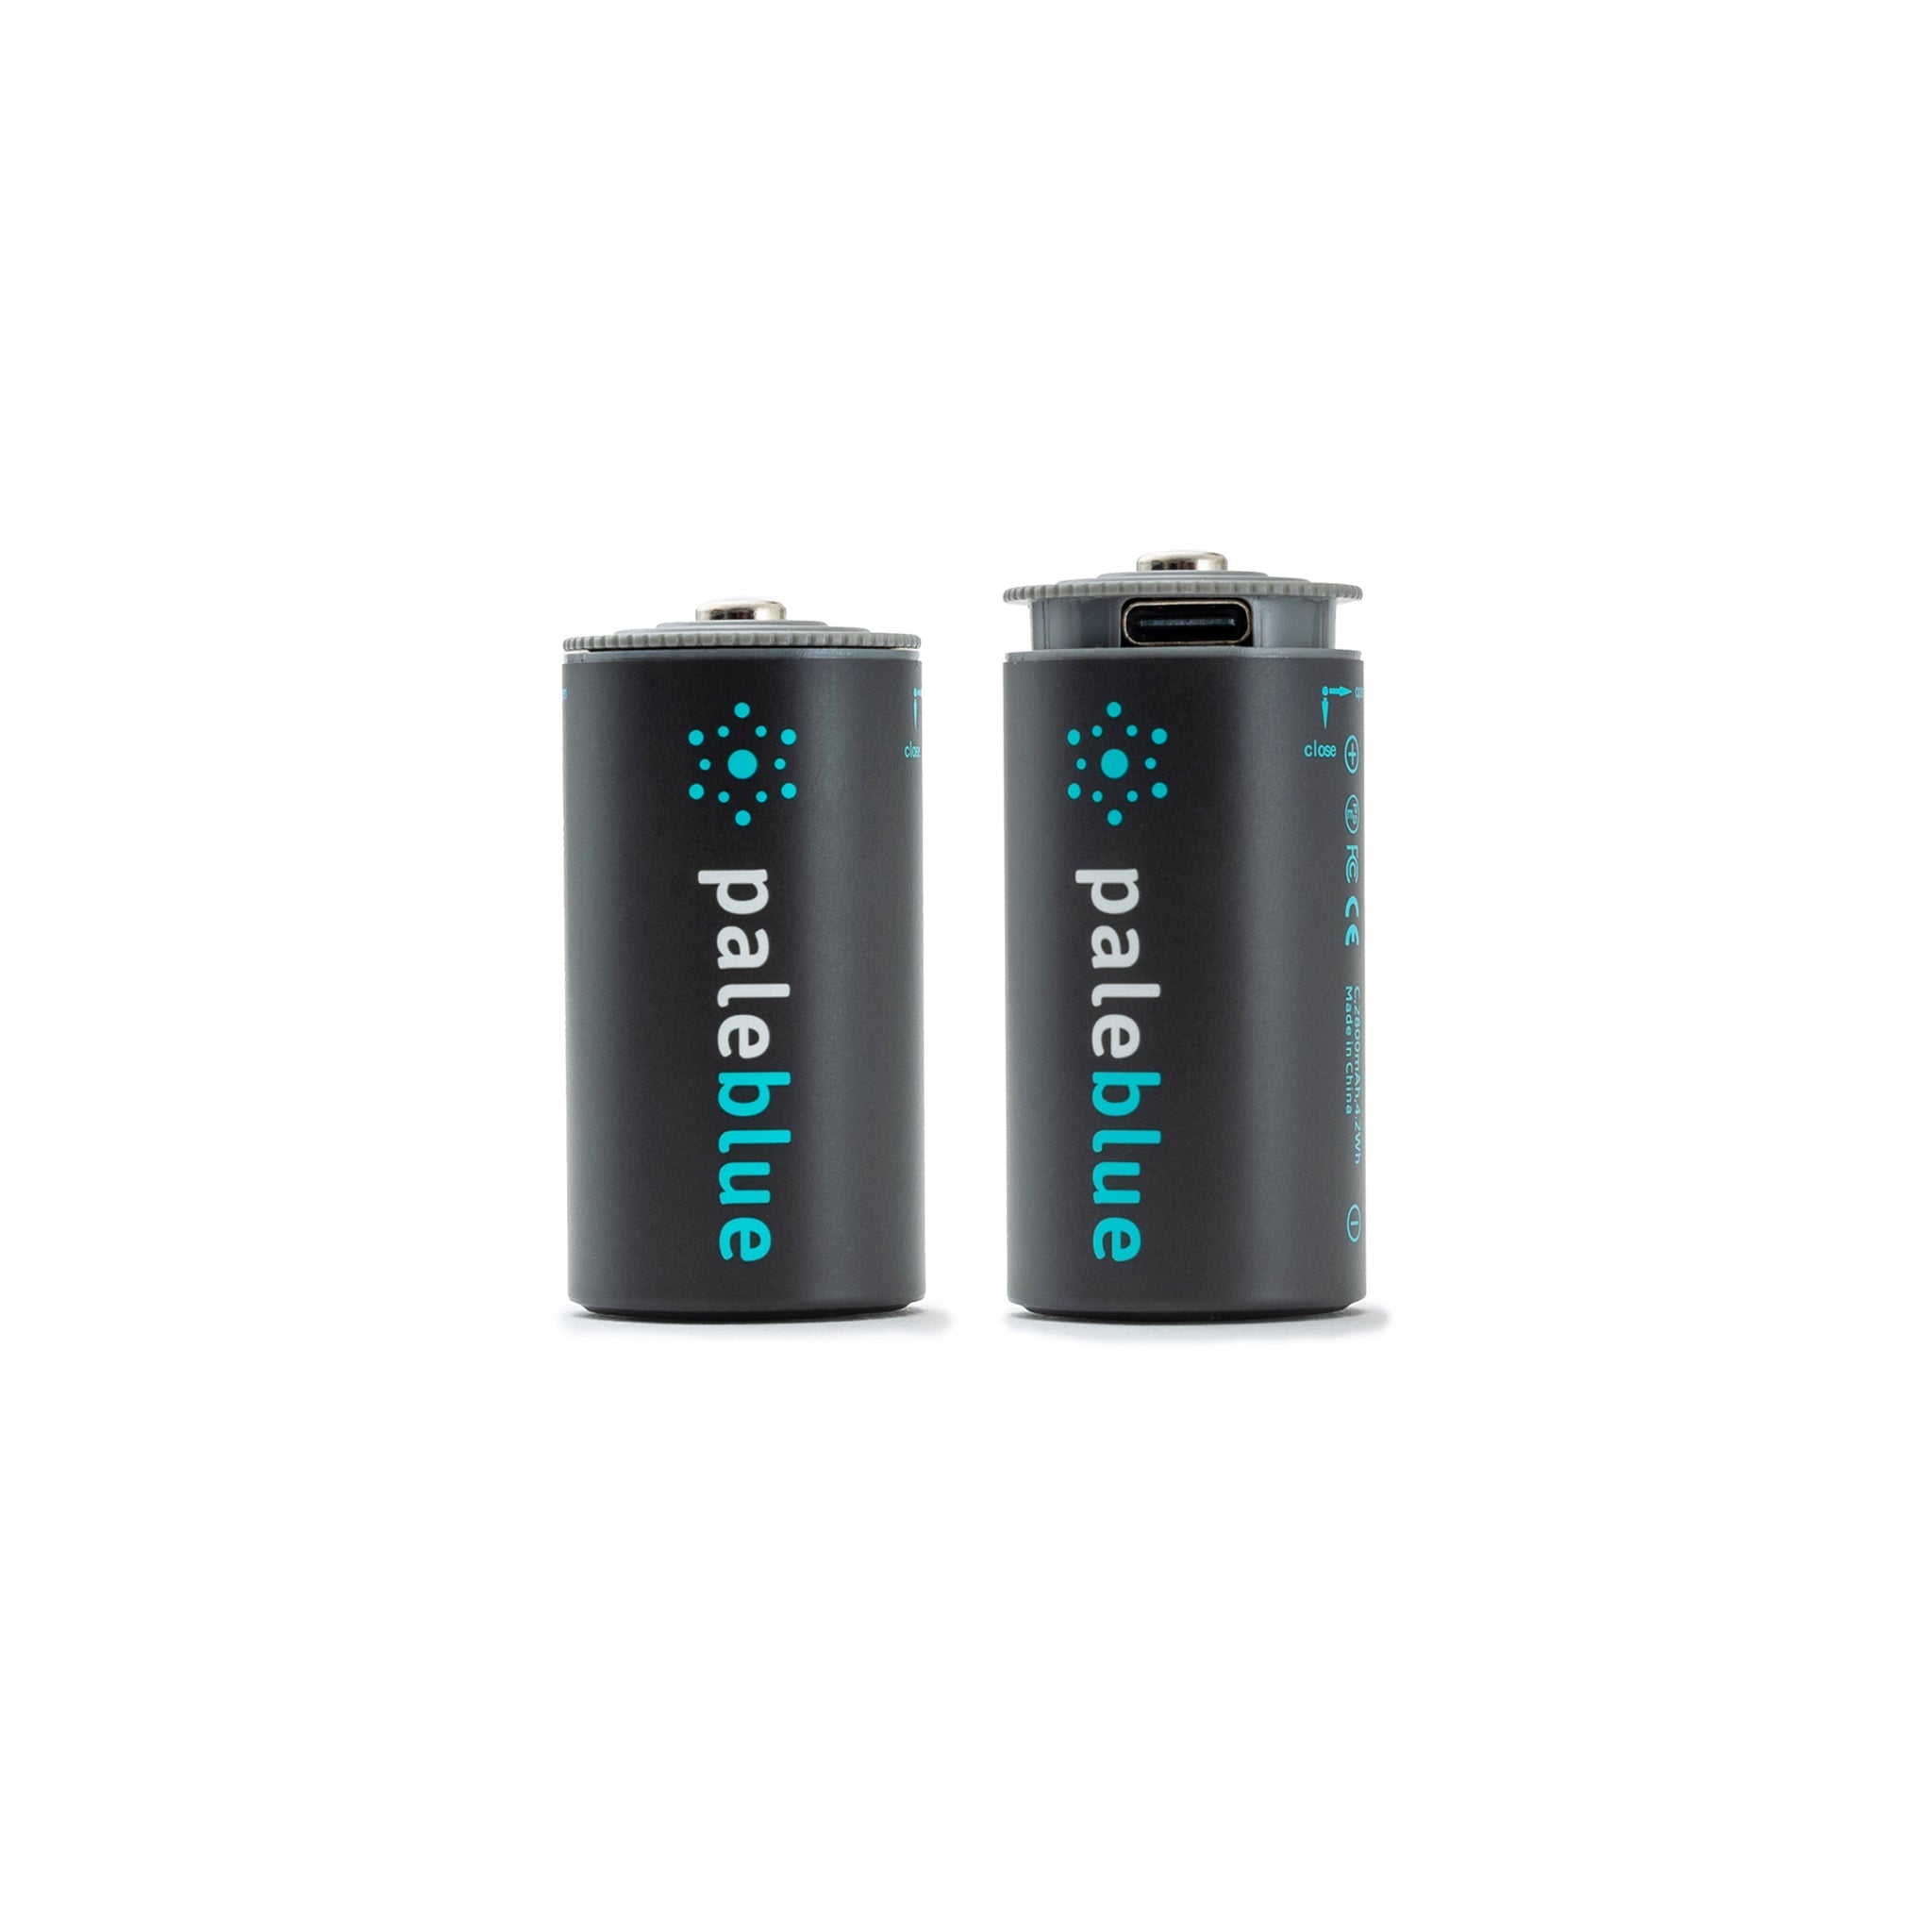 C USB-C Rechargeable Smart Batteries